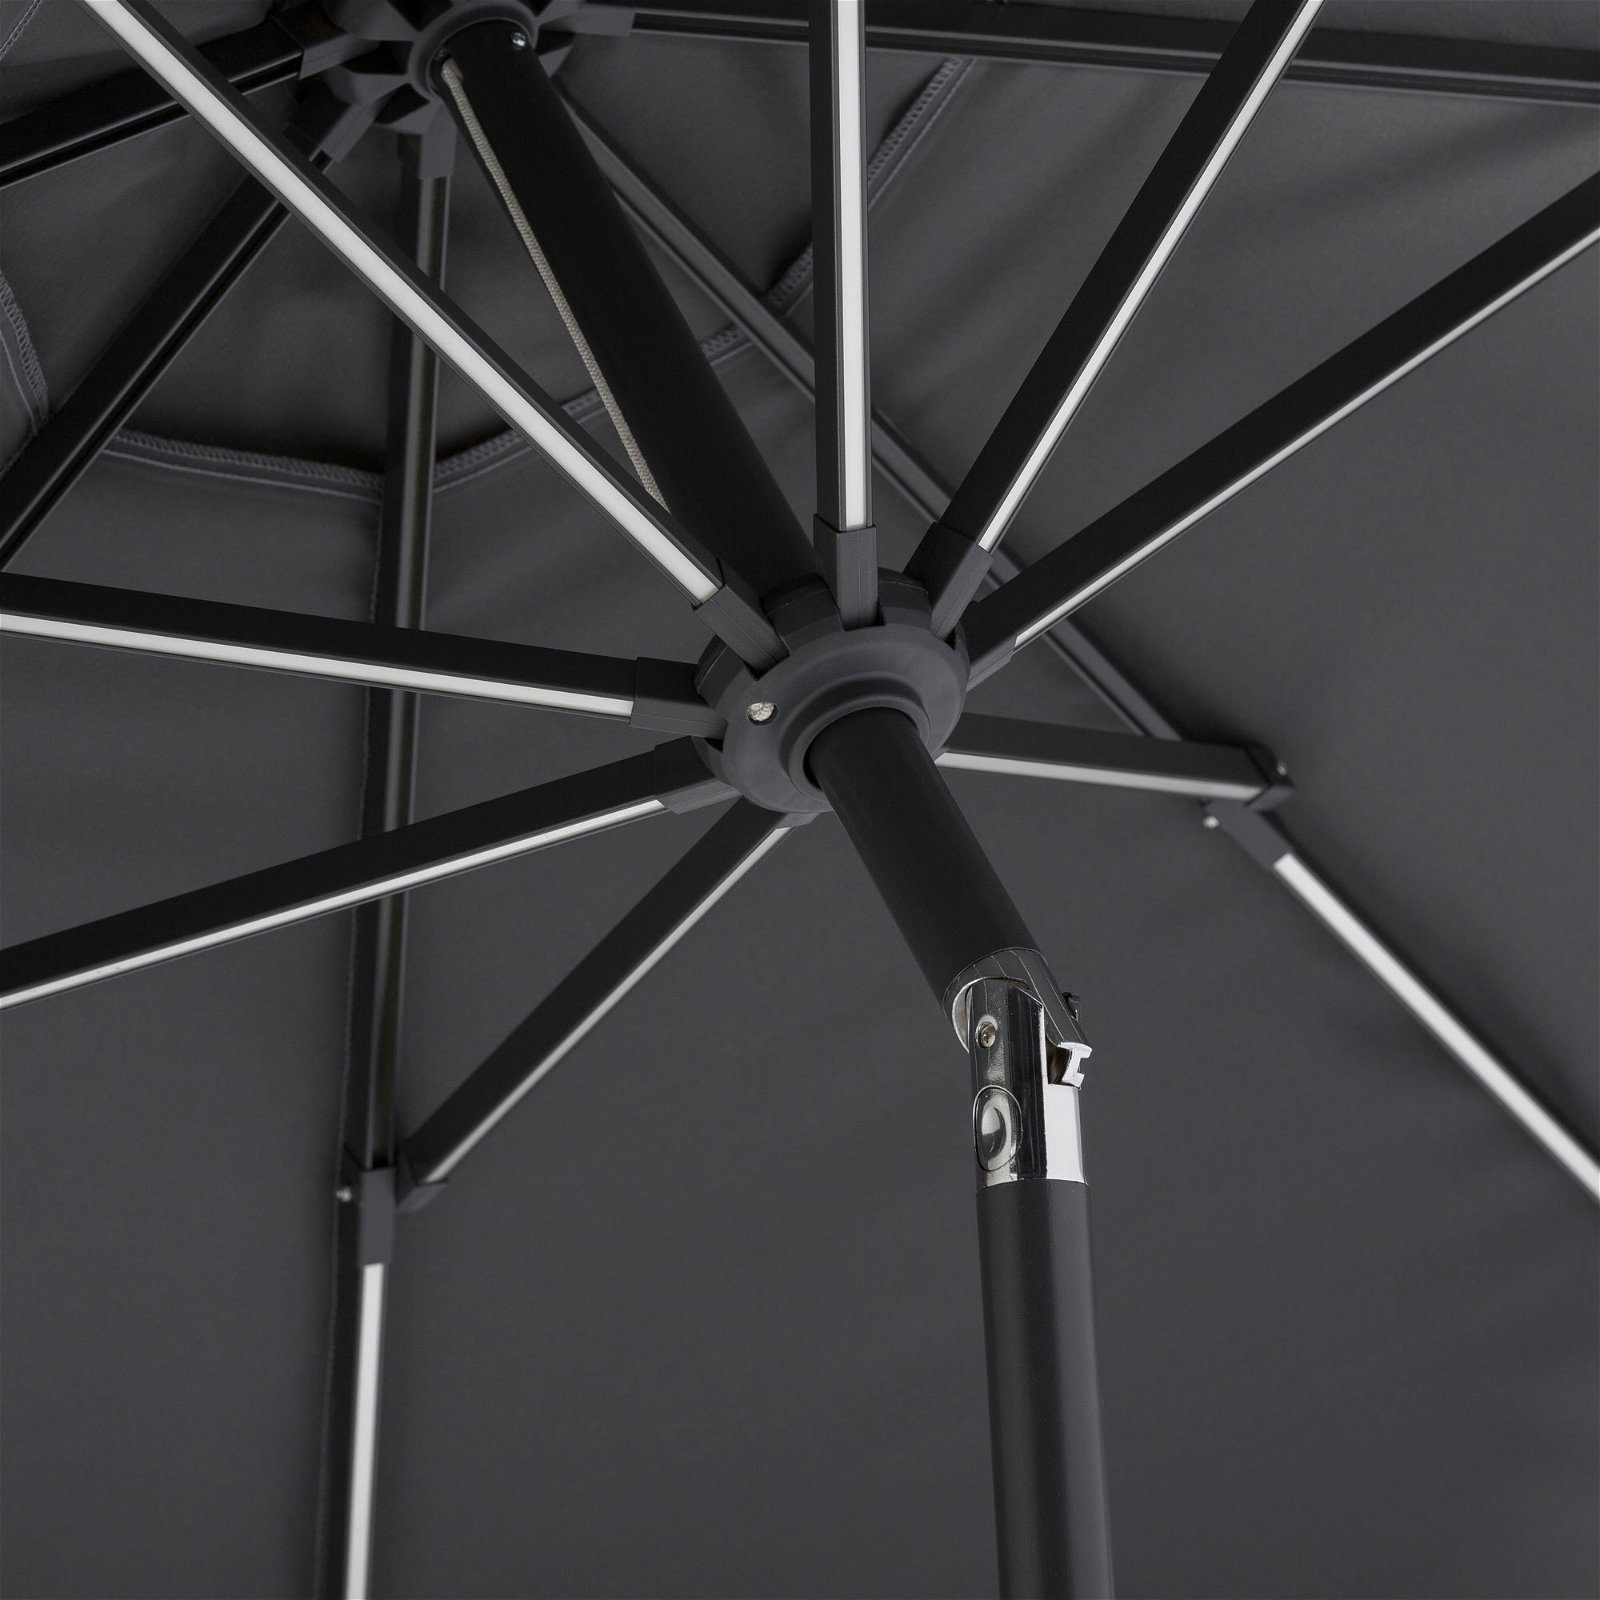 Schneider Sonnenschirm 'Blacklight' mit LEDs, anthrazit, Ø 270 cm